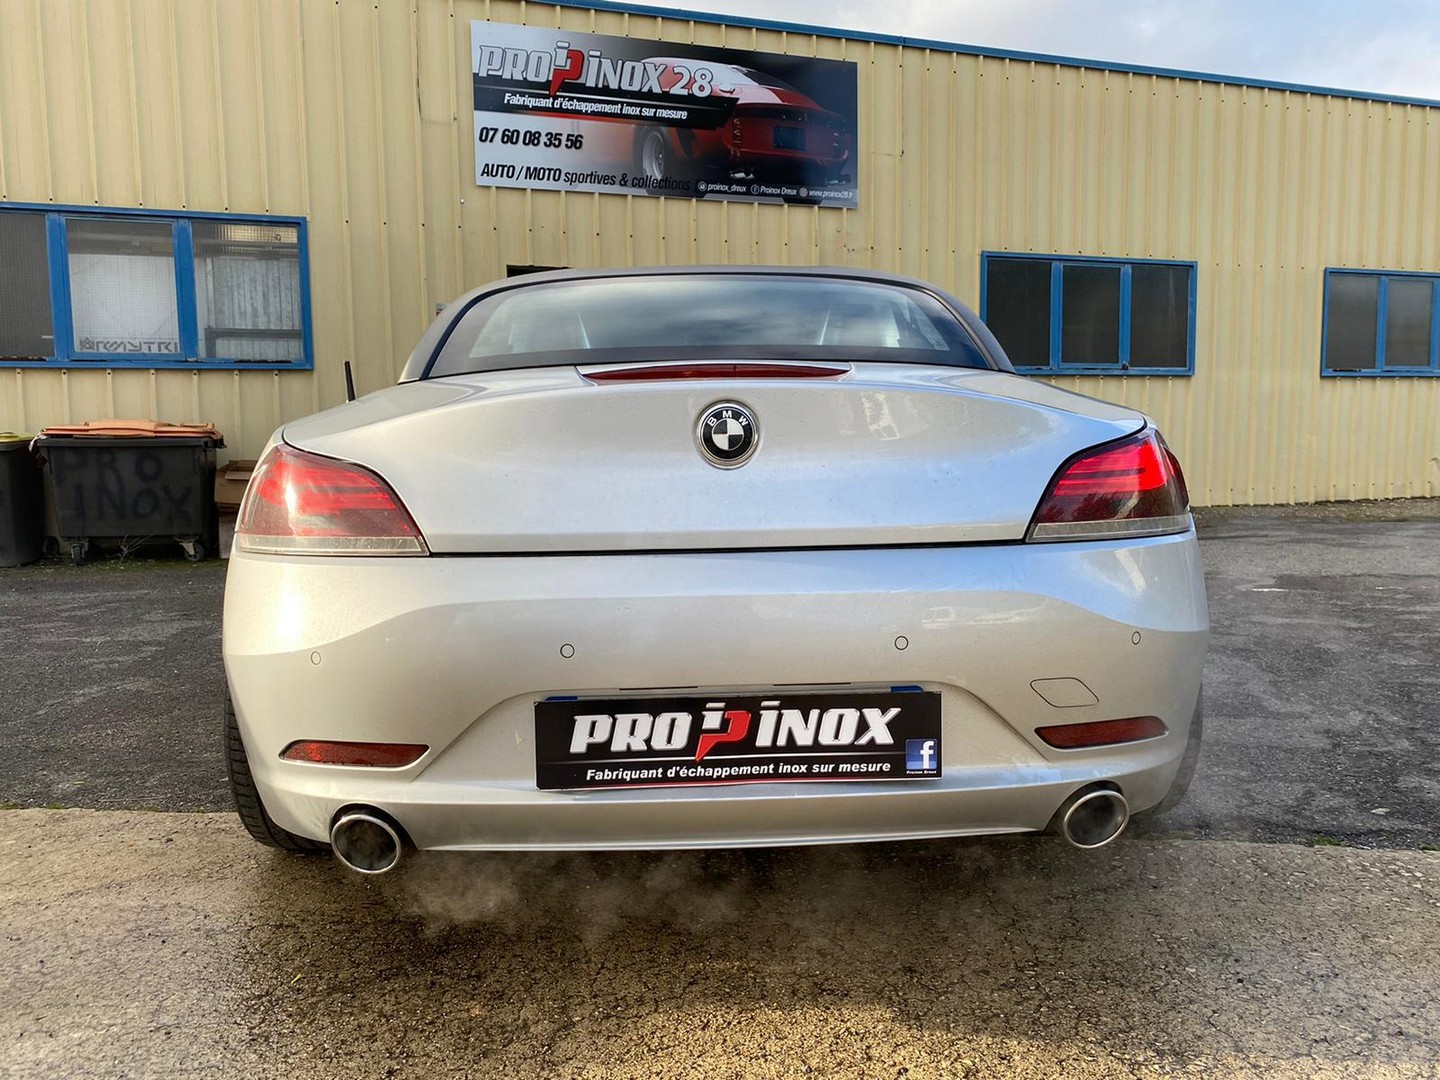 Proinox28 - Échappement inox BMW Z4 35i